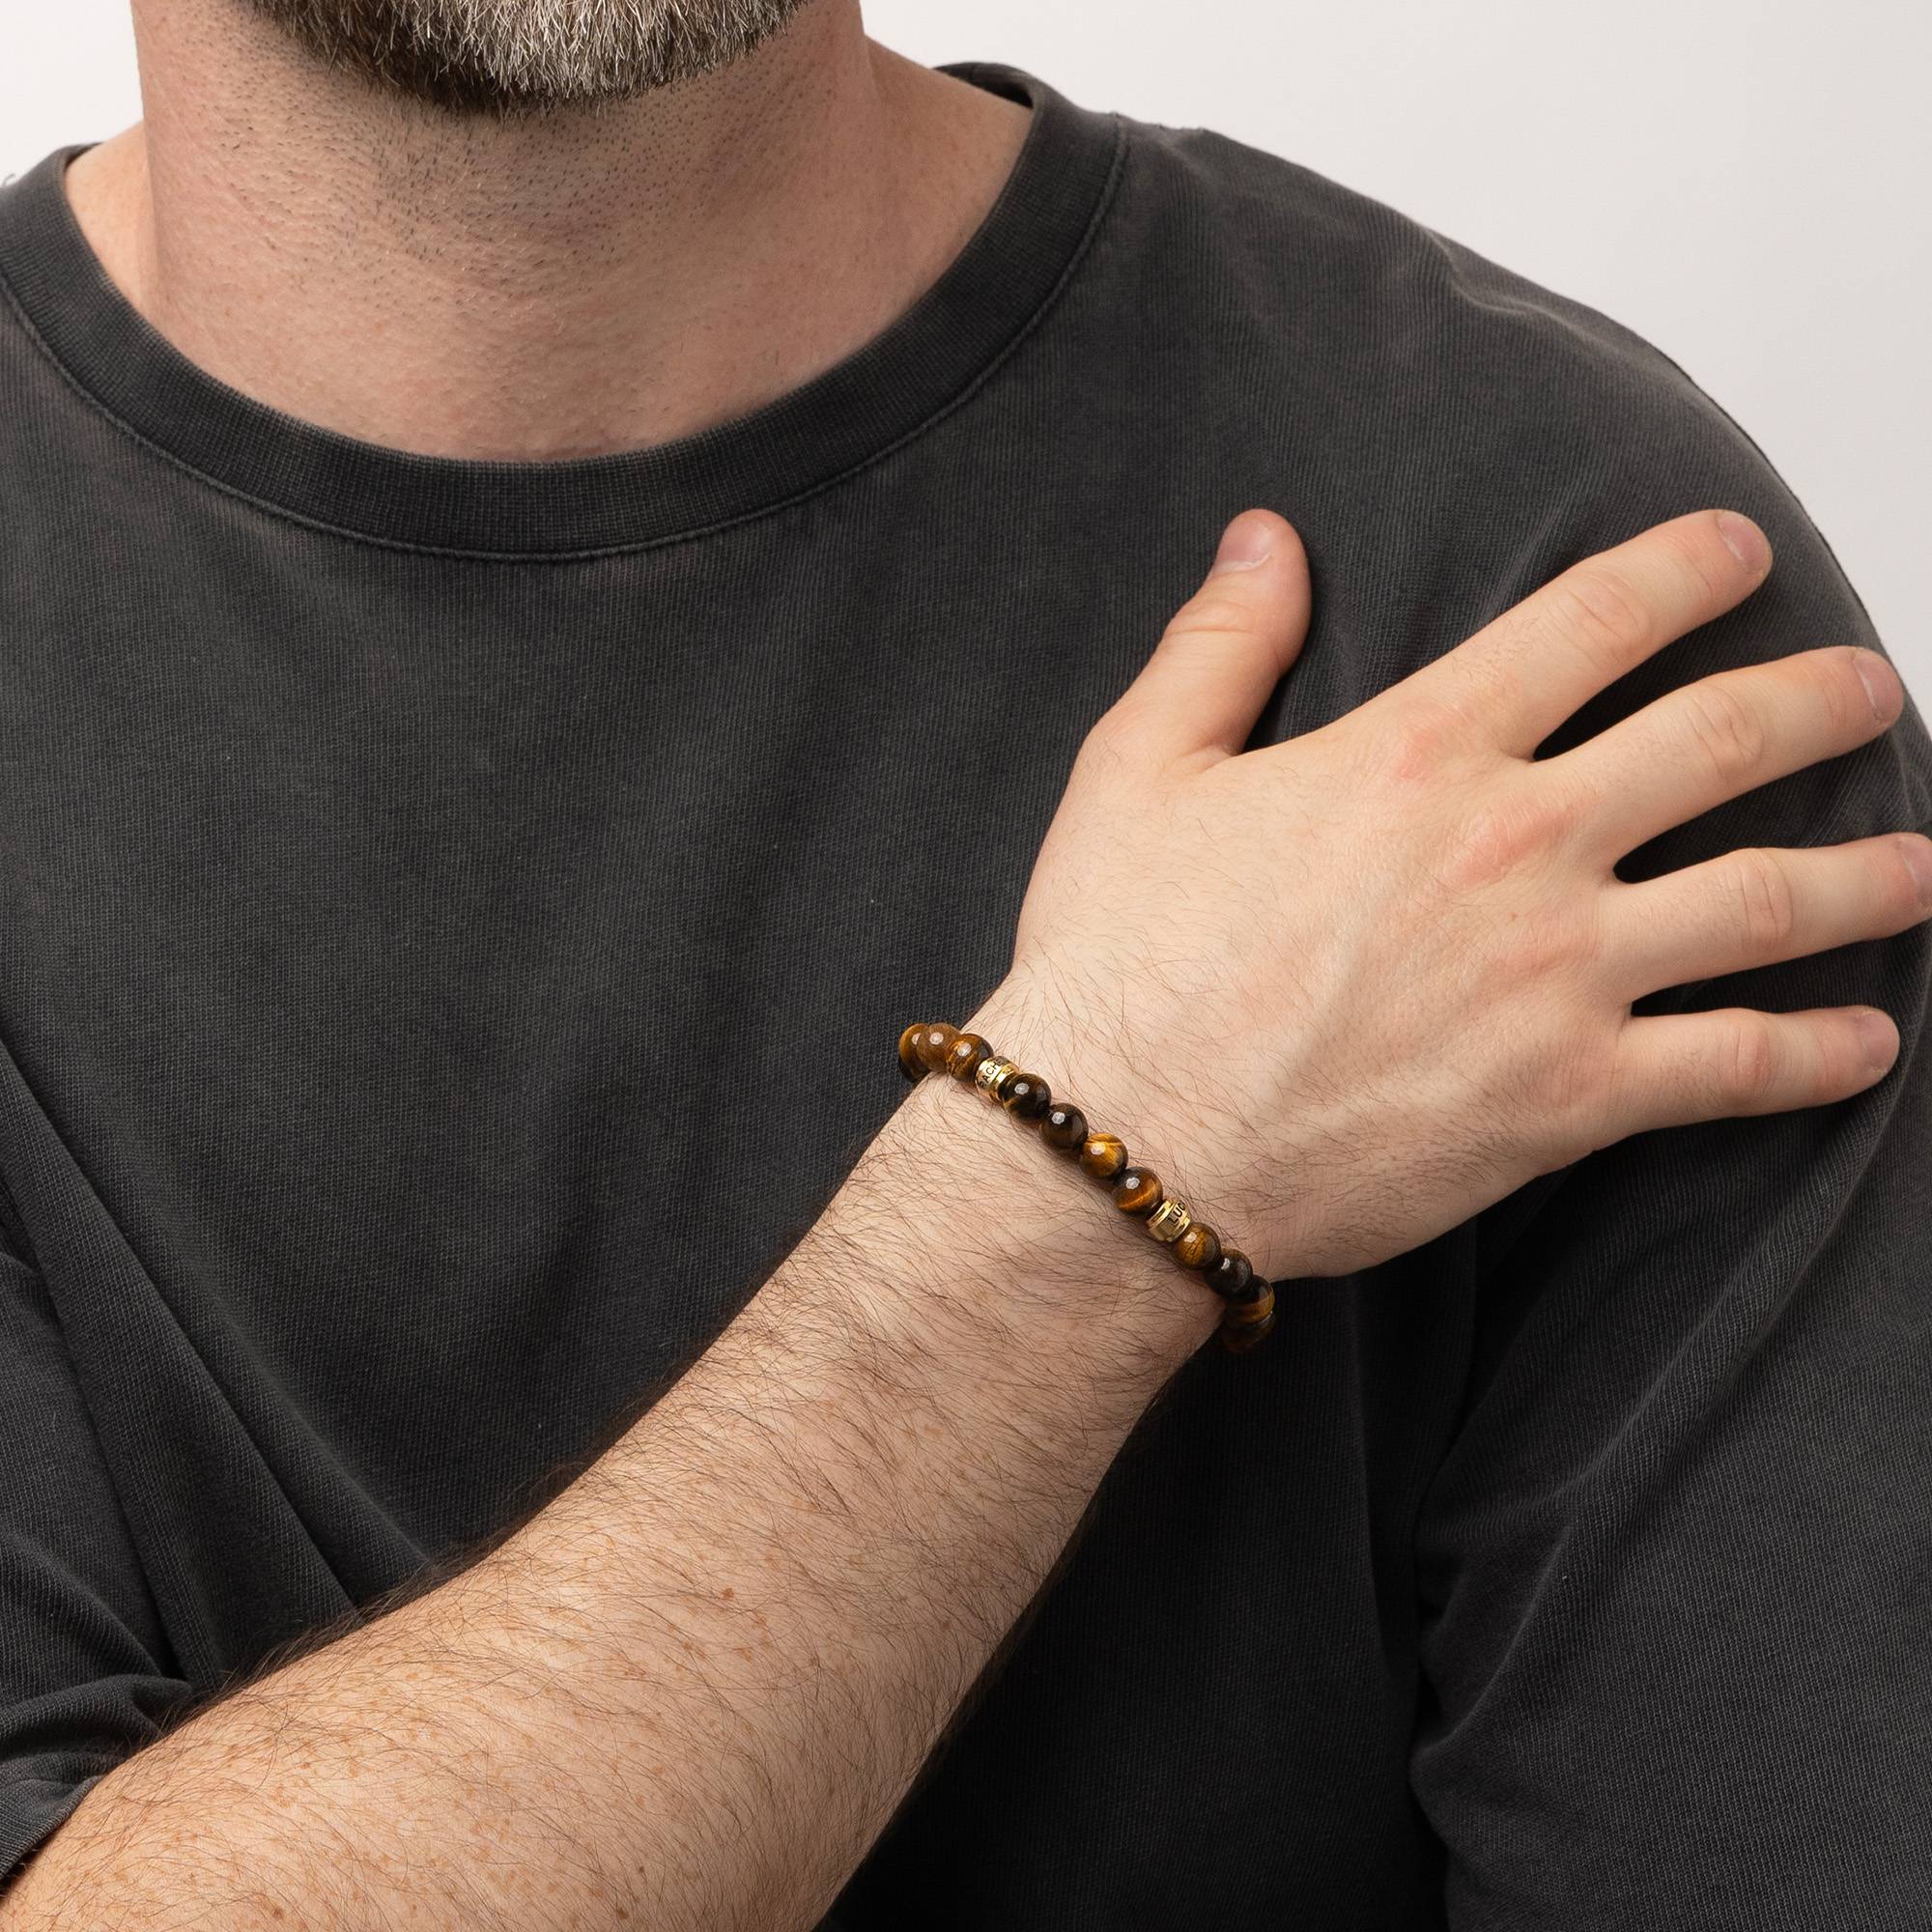 Leo personalisiertes Tiegerauge Herrenarmband mit vergoldeten Beads-2 Produktfoto